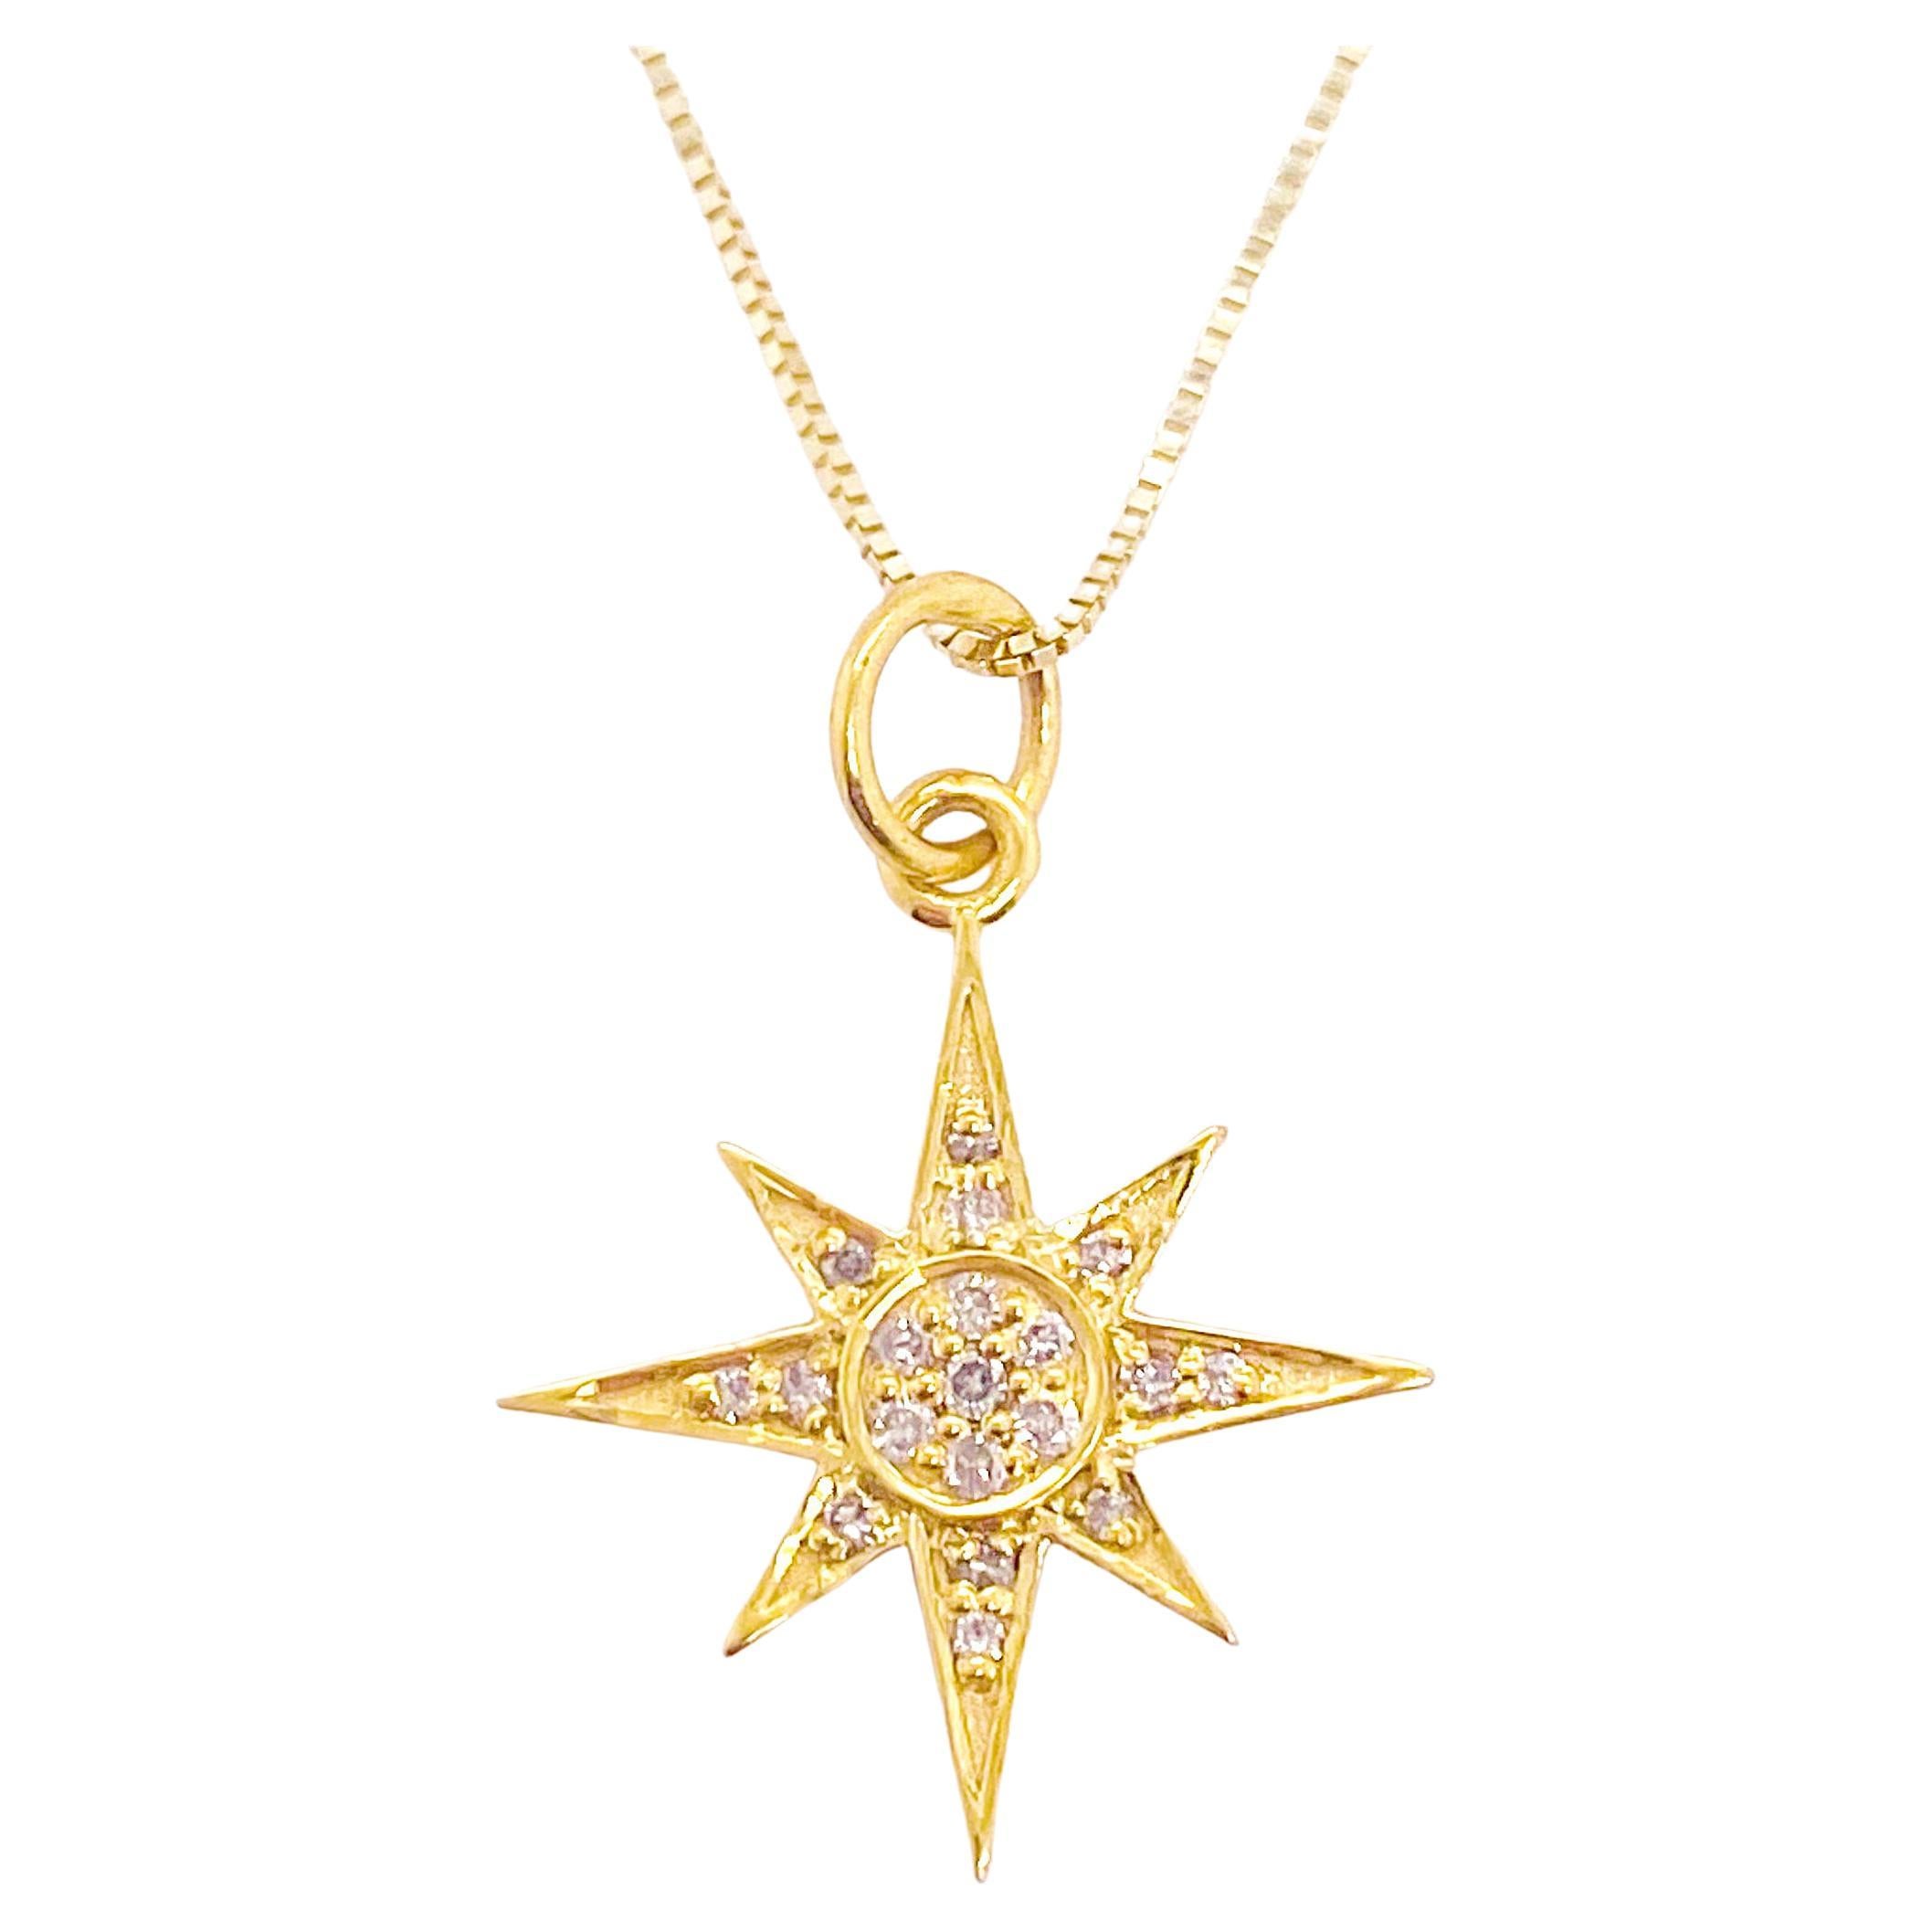 Diamant-Stern-Halskette, Gelbgold, Diamanten, 19 Diamanten, Nordstern-Anhänger-Halskette